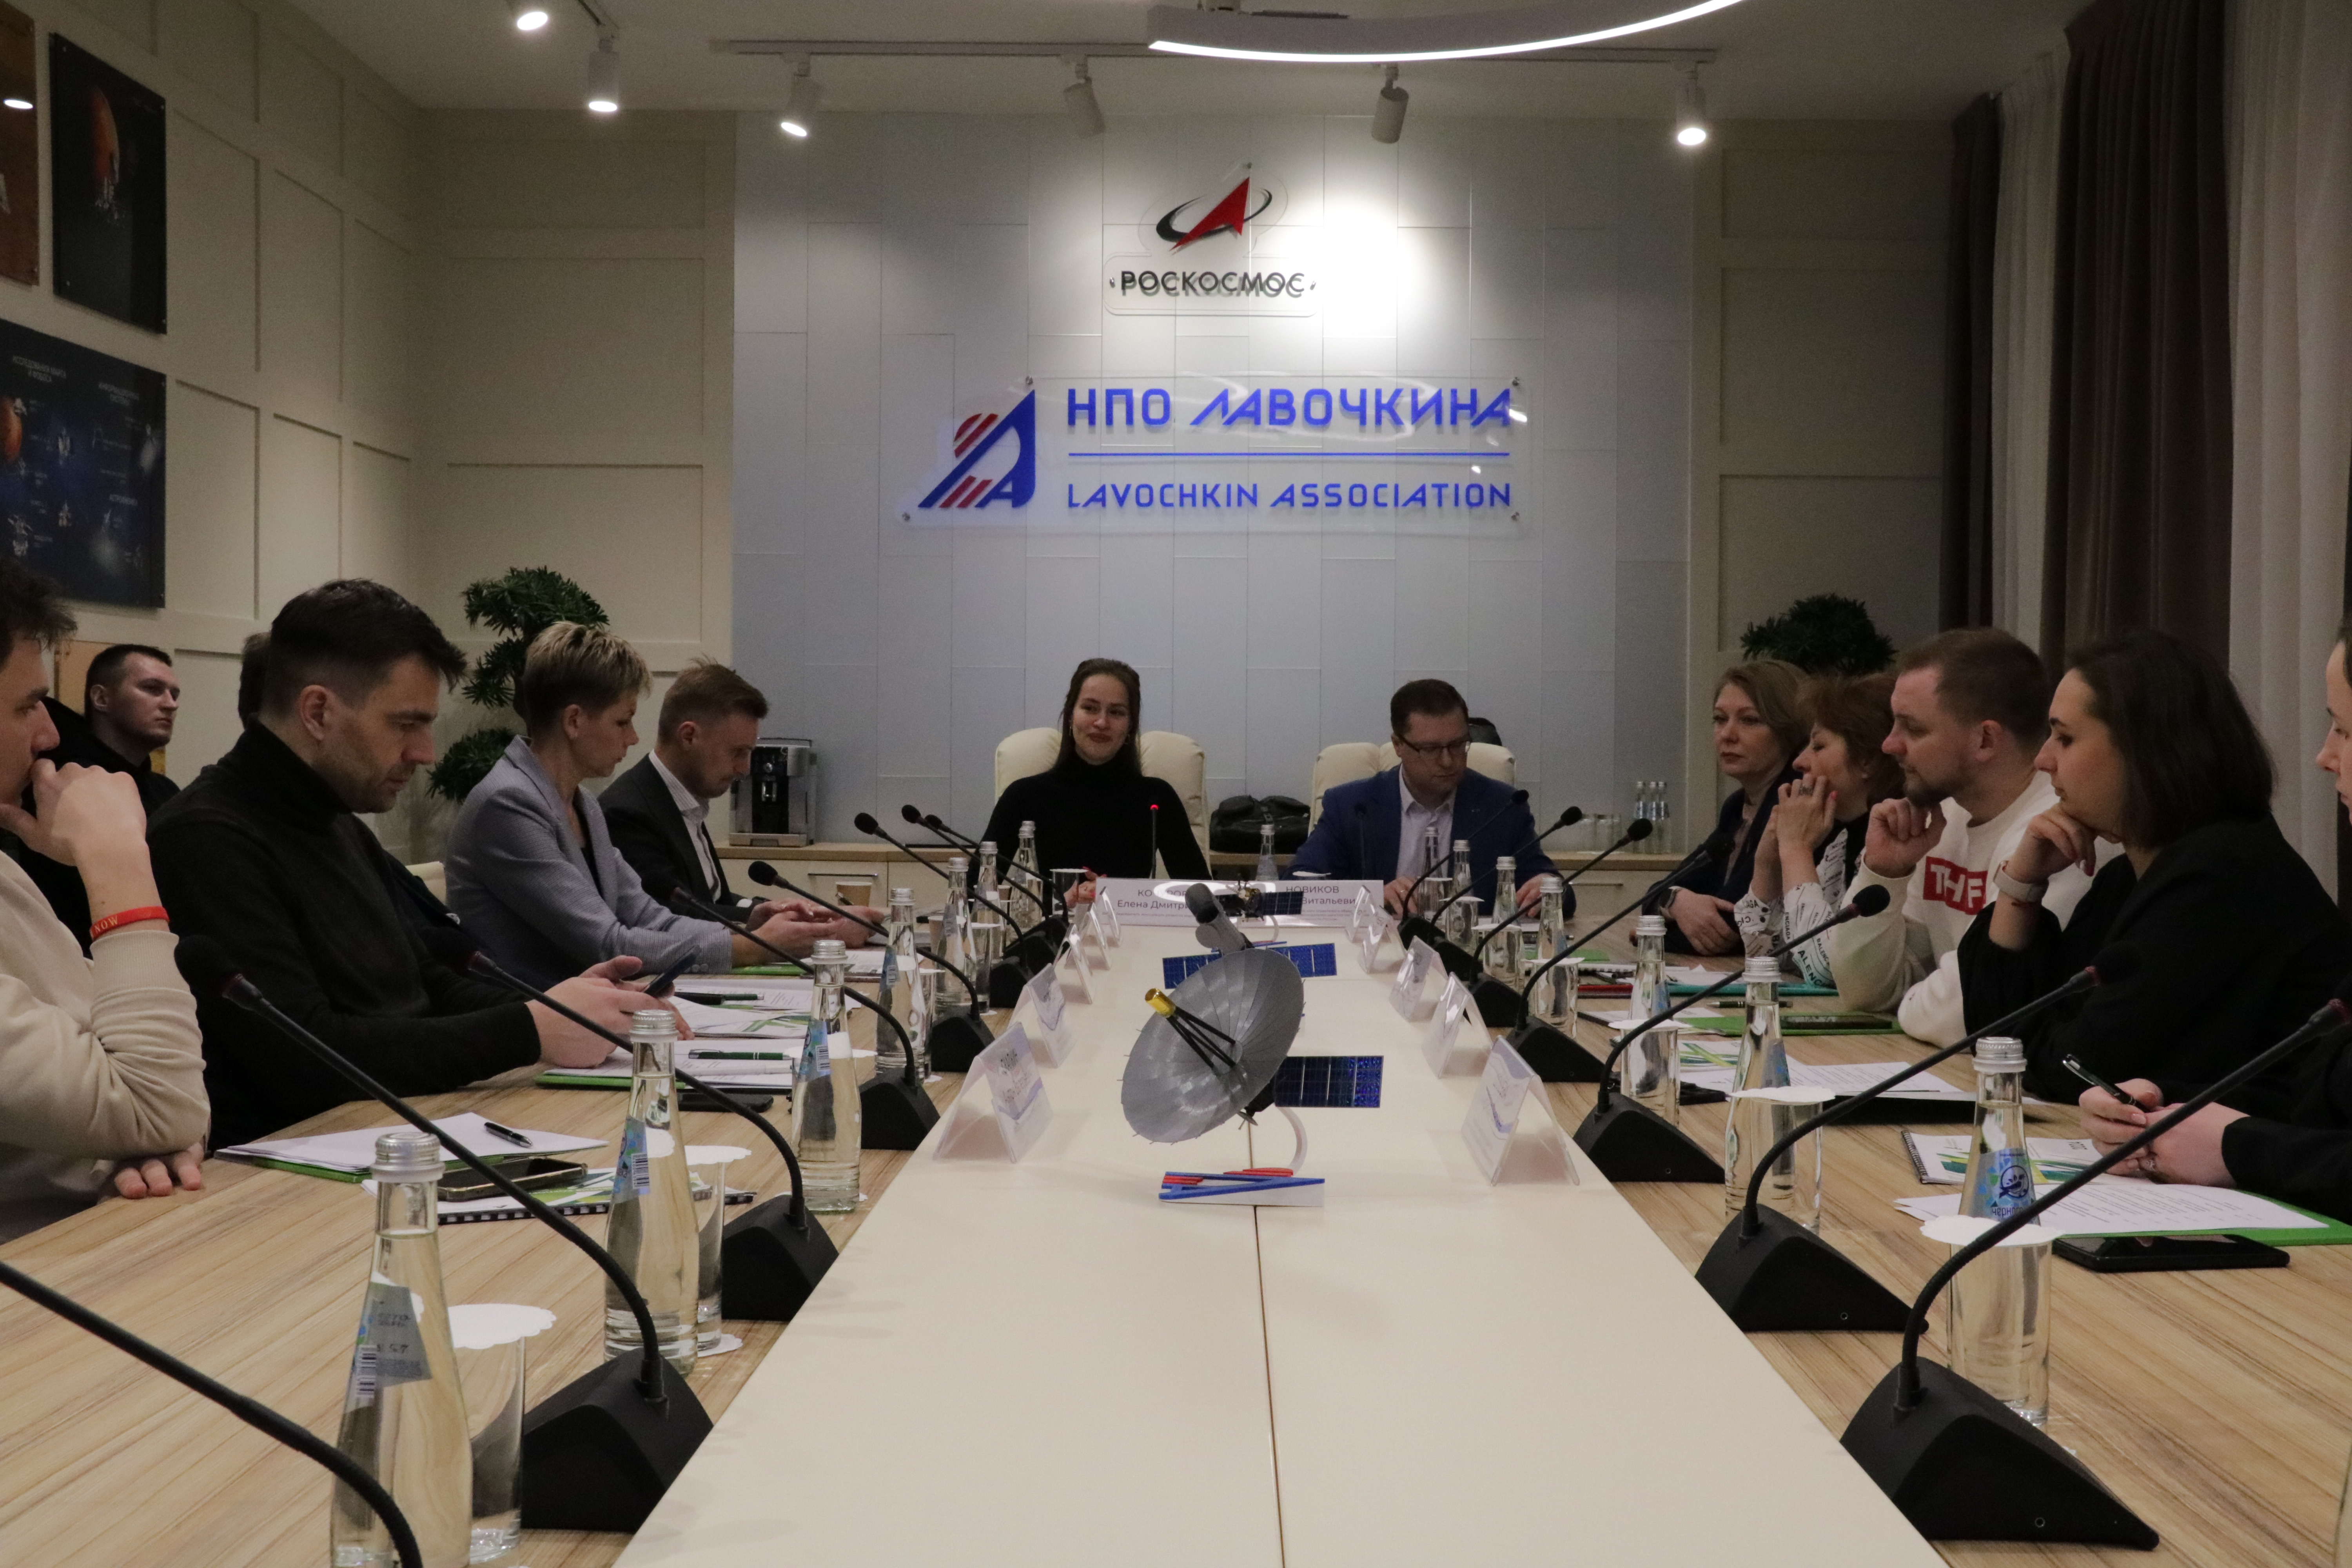 Организацию спортивной деятельности на промышленных предприятиях обсудили в НПО Лавочкина